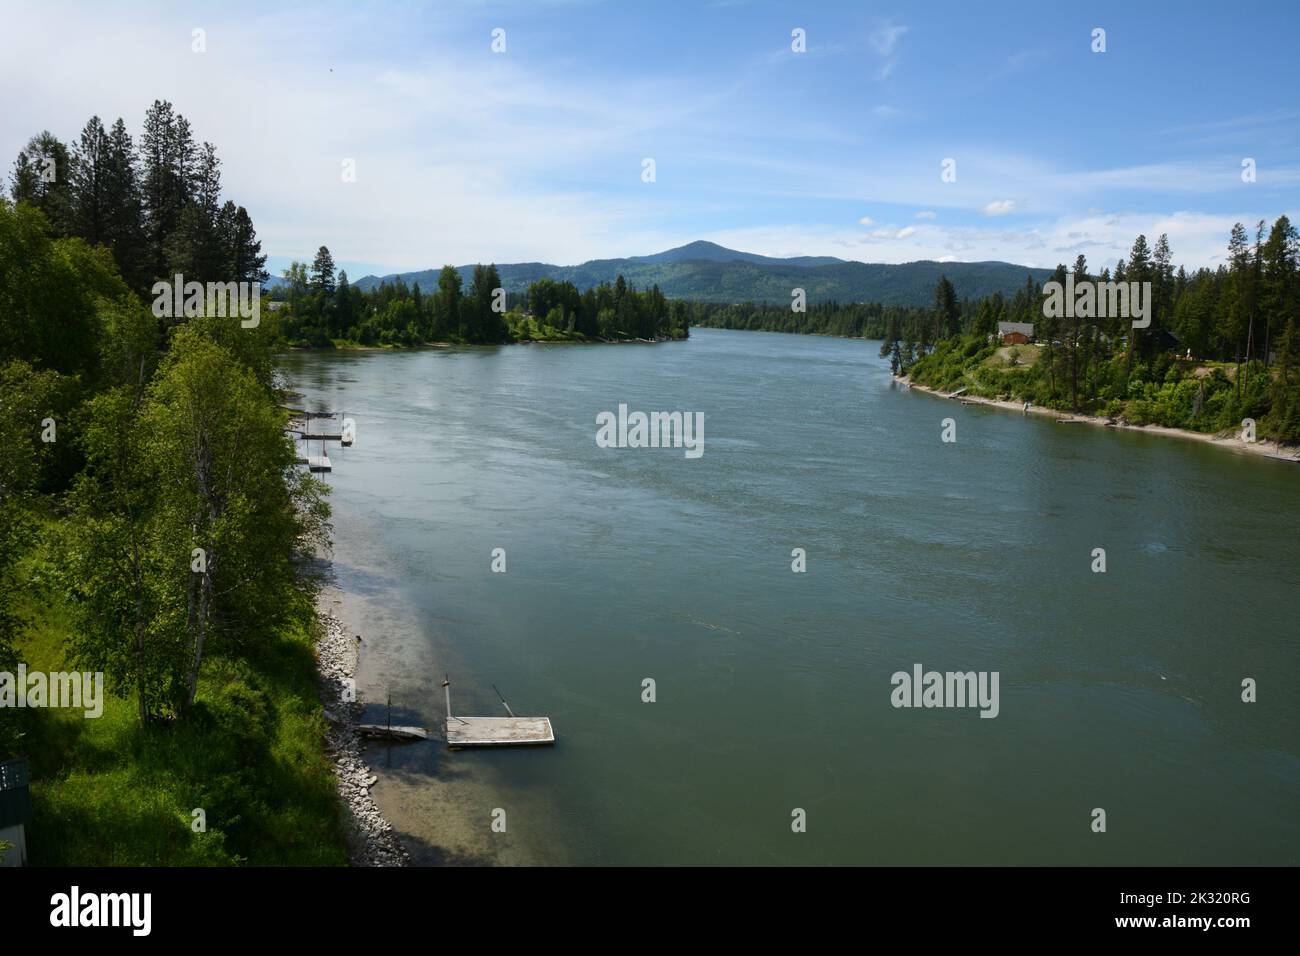 El río Pend-Oreille, un afluente del Columbia, que atraviesa el bosque nacional de Colville cerca de Ione, en el noreste del estado de Washington, EE.UU. Foto de stock